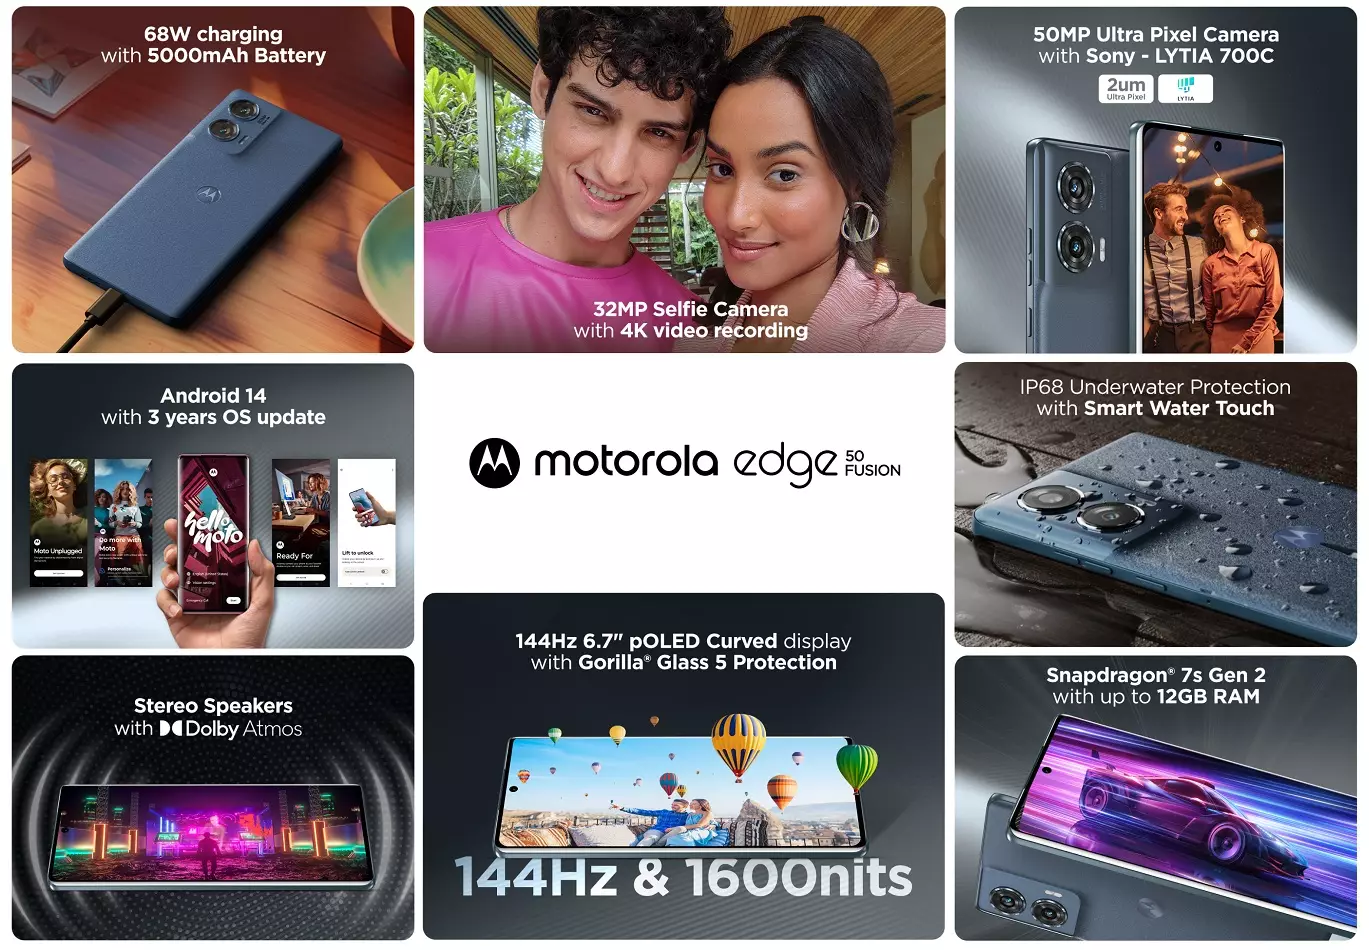 Motorola edge 50 fusion features.